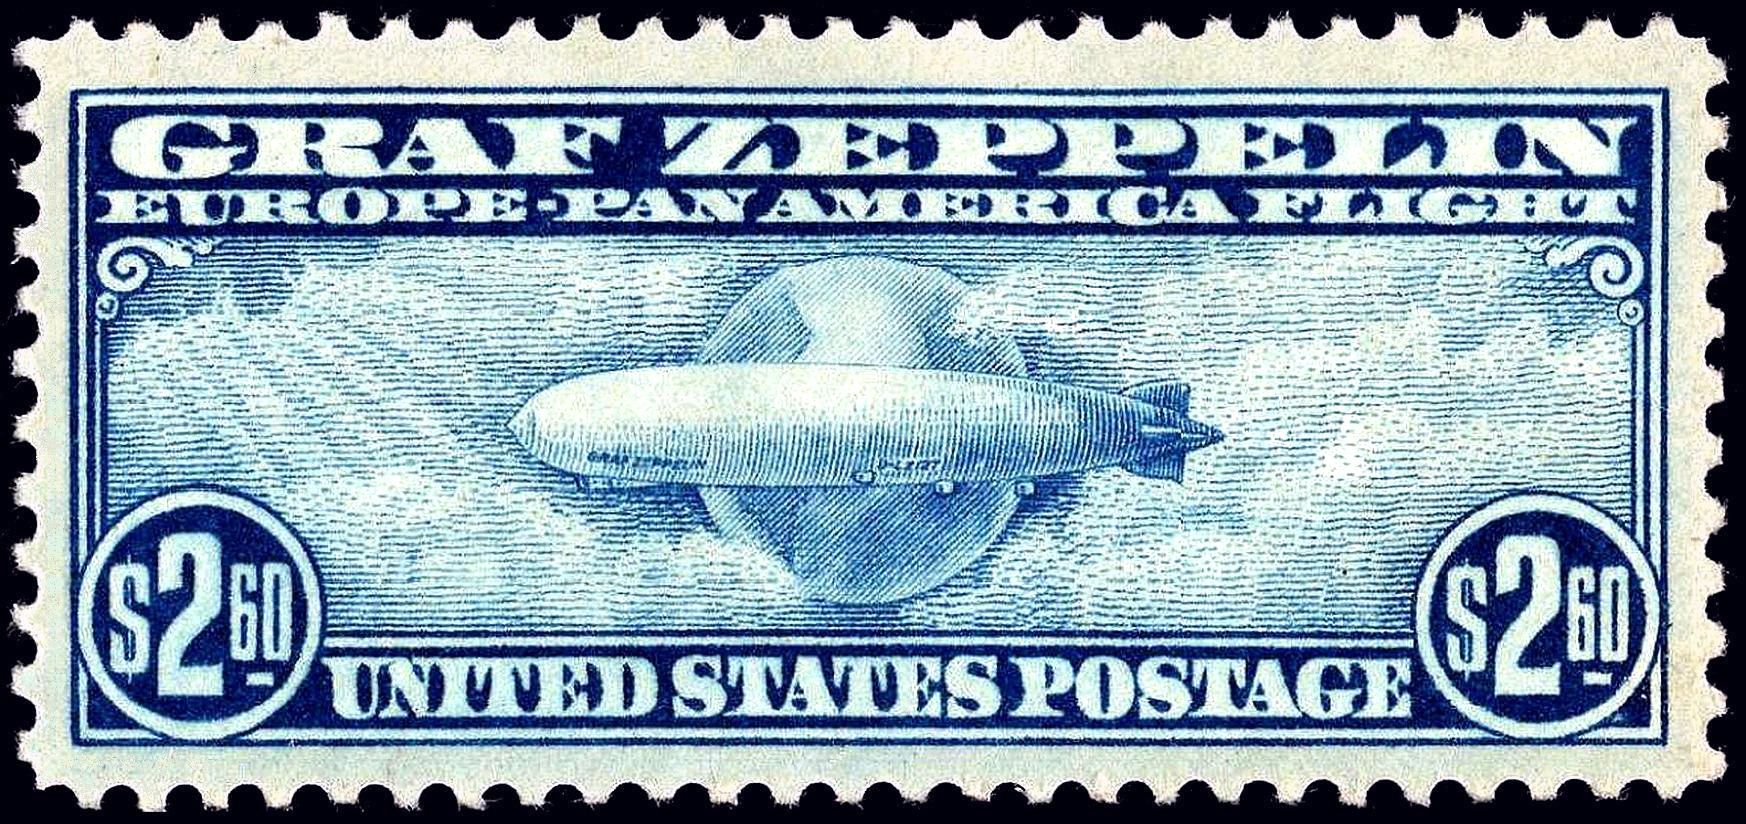 Fotogalerie / Vzducholoď Graf Zeppelin / Výročí 90. let vzniku / Wiki / 42